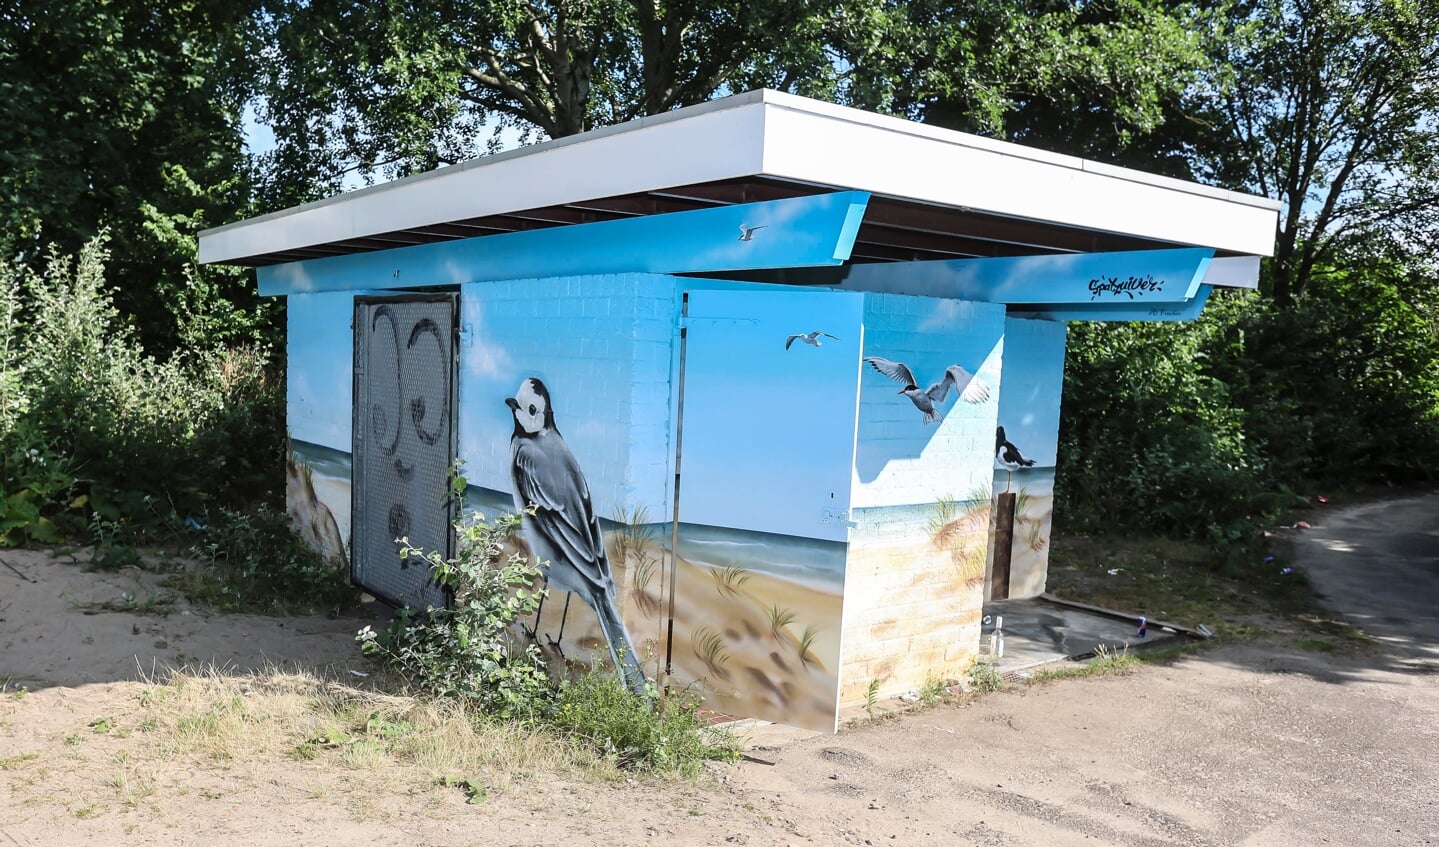 De toiletgebouwtjes op het Almeerderstrand zijn door kunstenaars onder handen genomen. (Foto: Fred Rotgans)